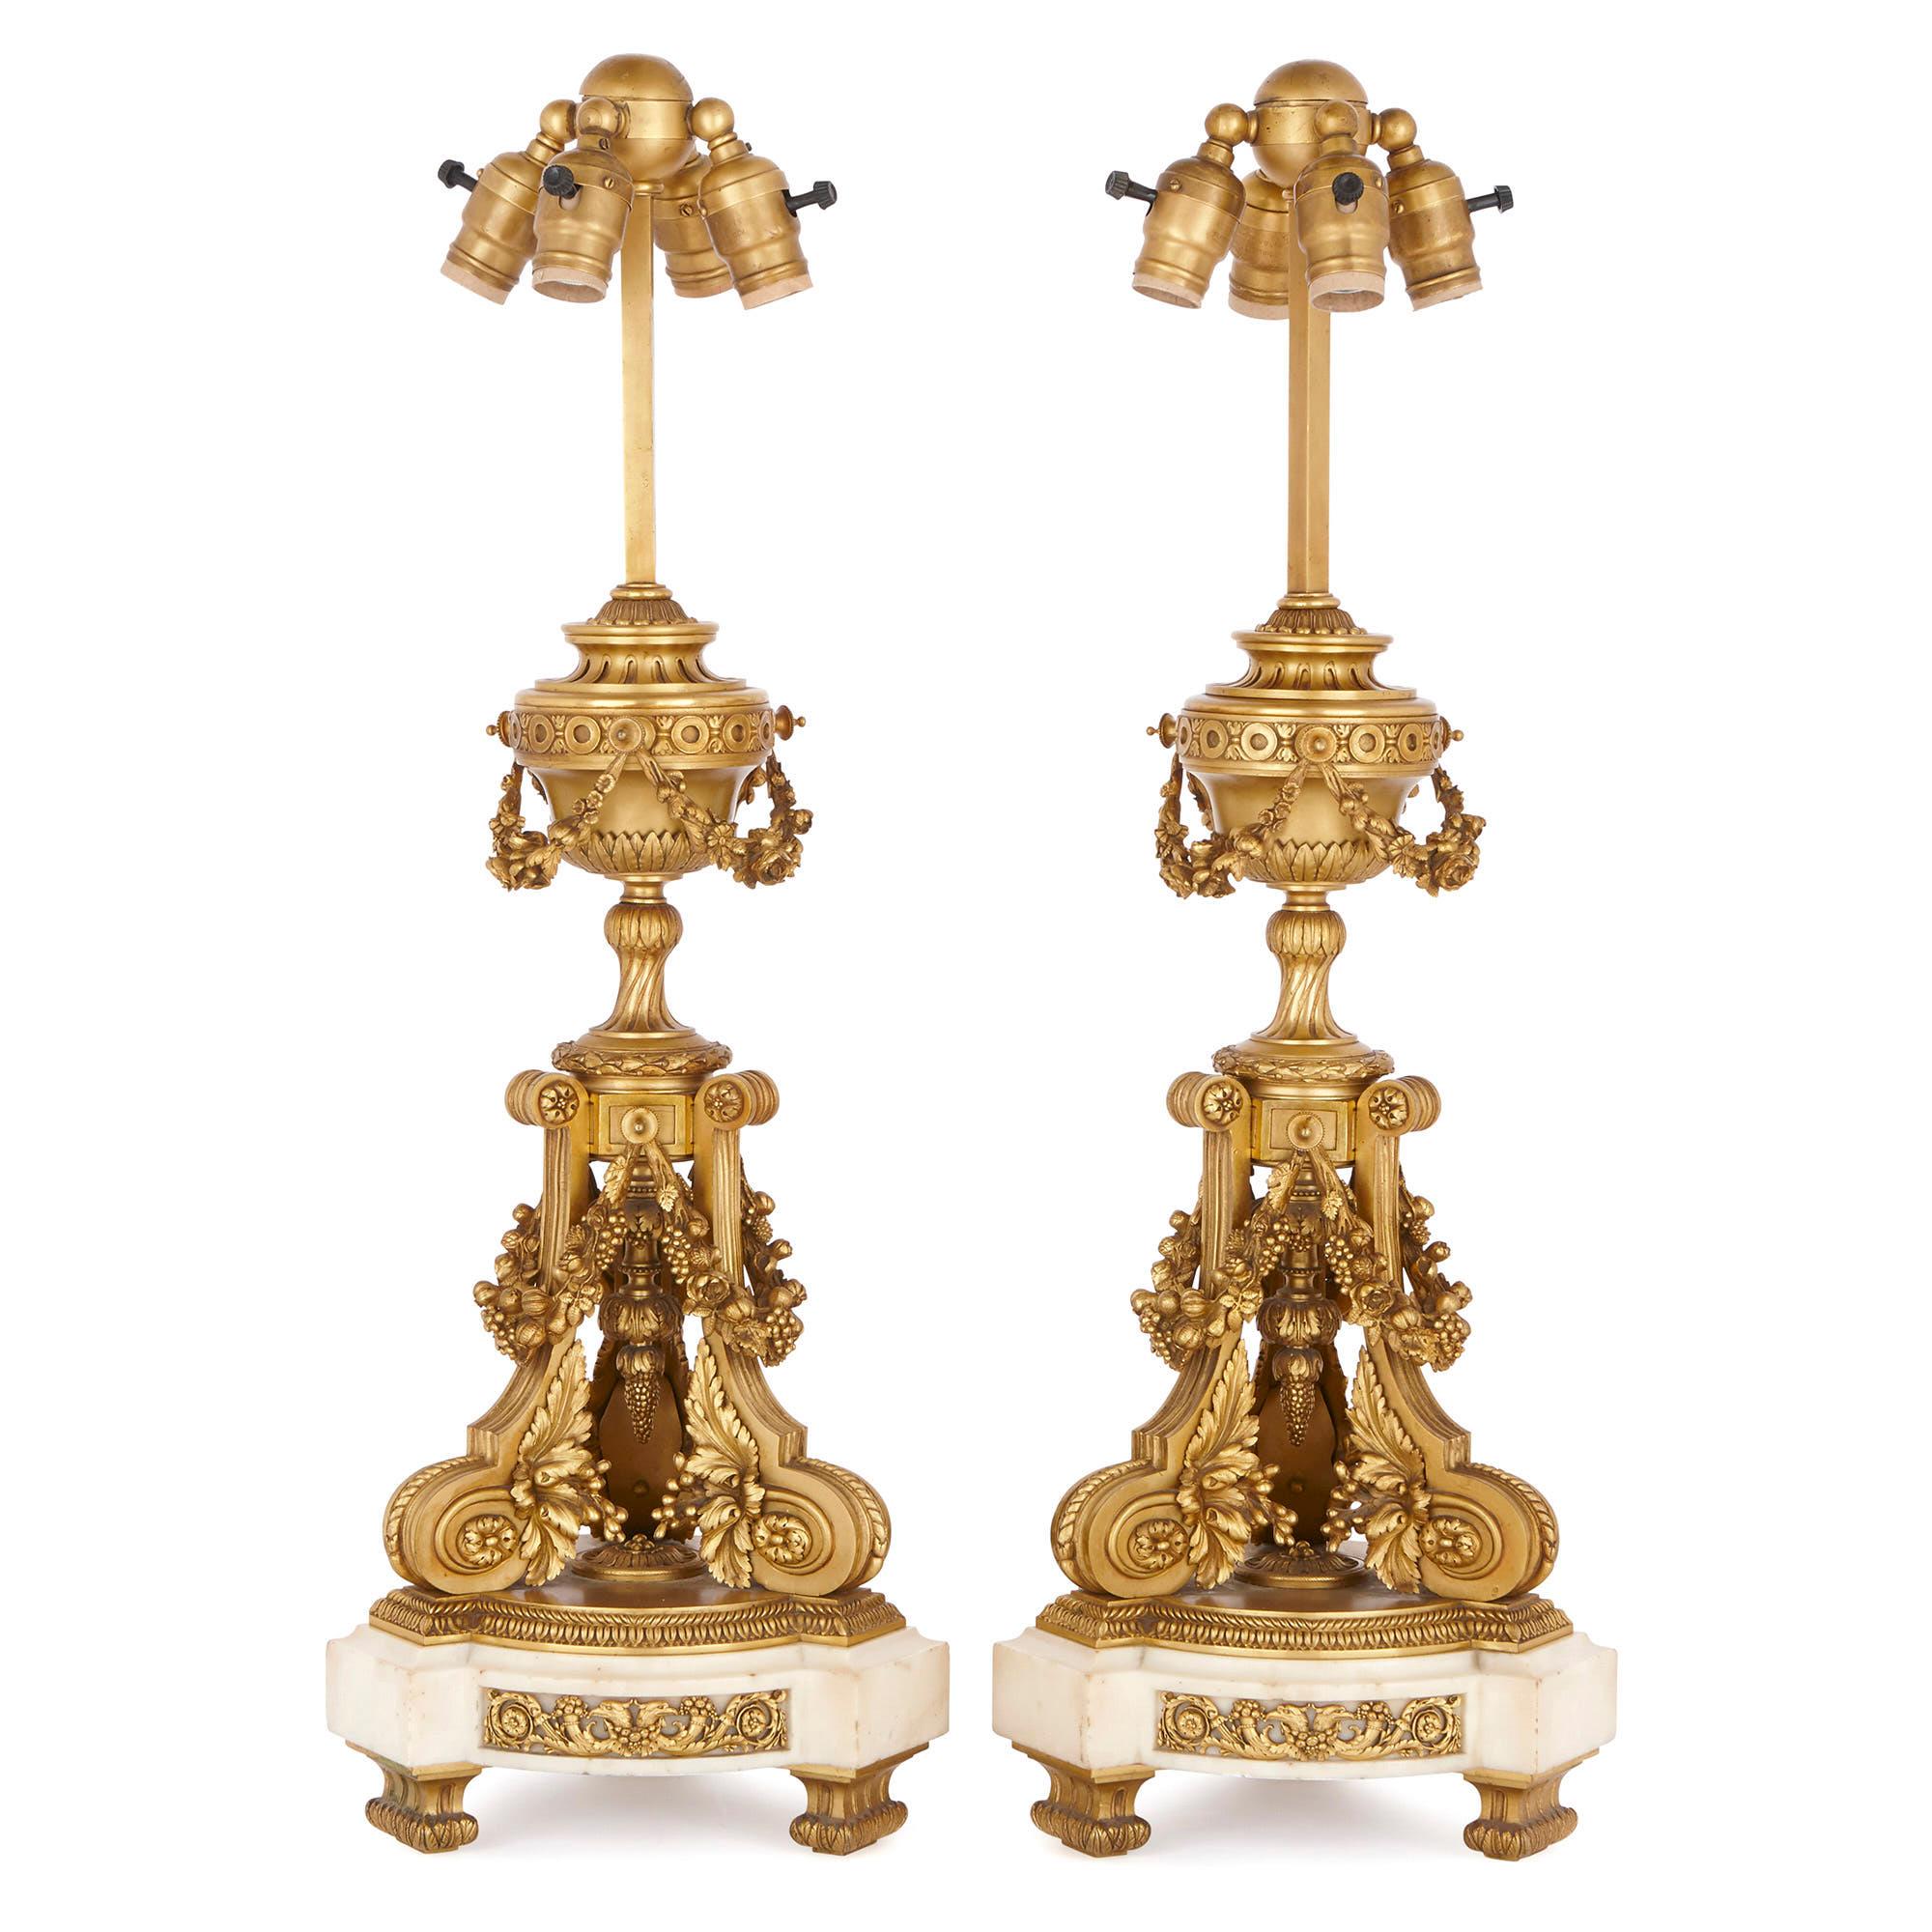 Diese exquisiten Lampen aus vergoldeter Bronze (Ormolu) wurden im späten 19. Jahrhundert in Frankreich hergestellt. Mit ihren klassisch inspirierten Urnen, Schnörkeln, Blättern, Blumen und Früchten sind diese Lampen eindeutig von der dekorativen